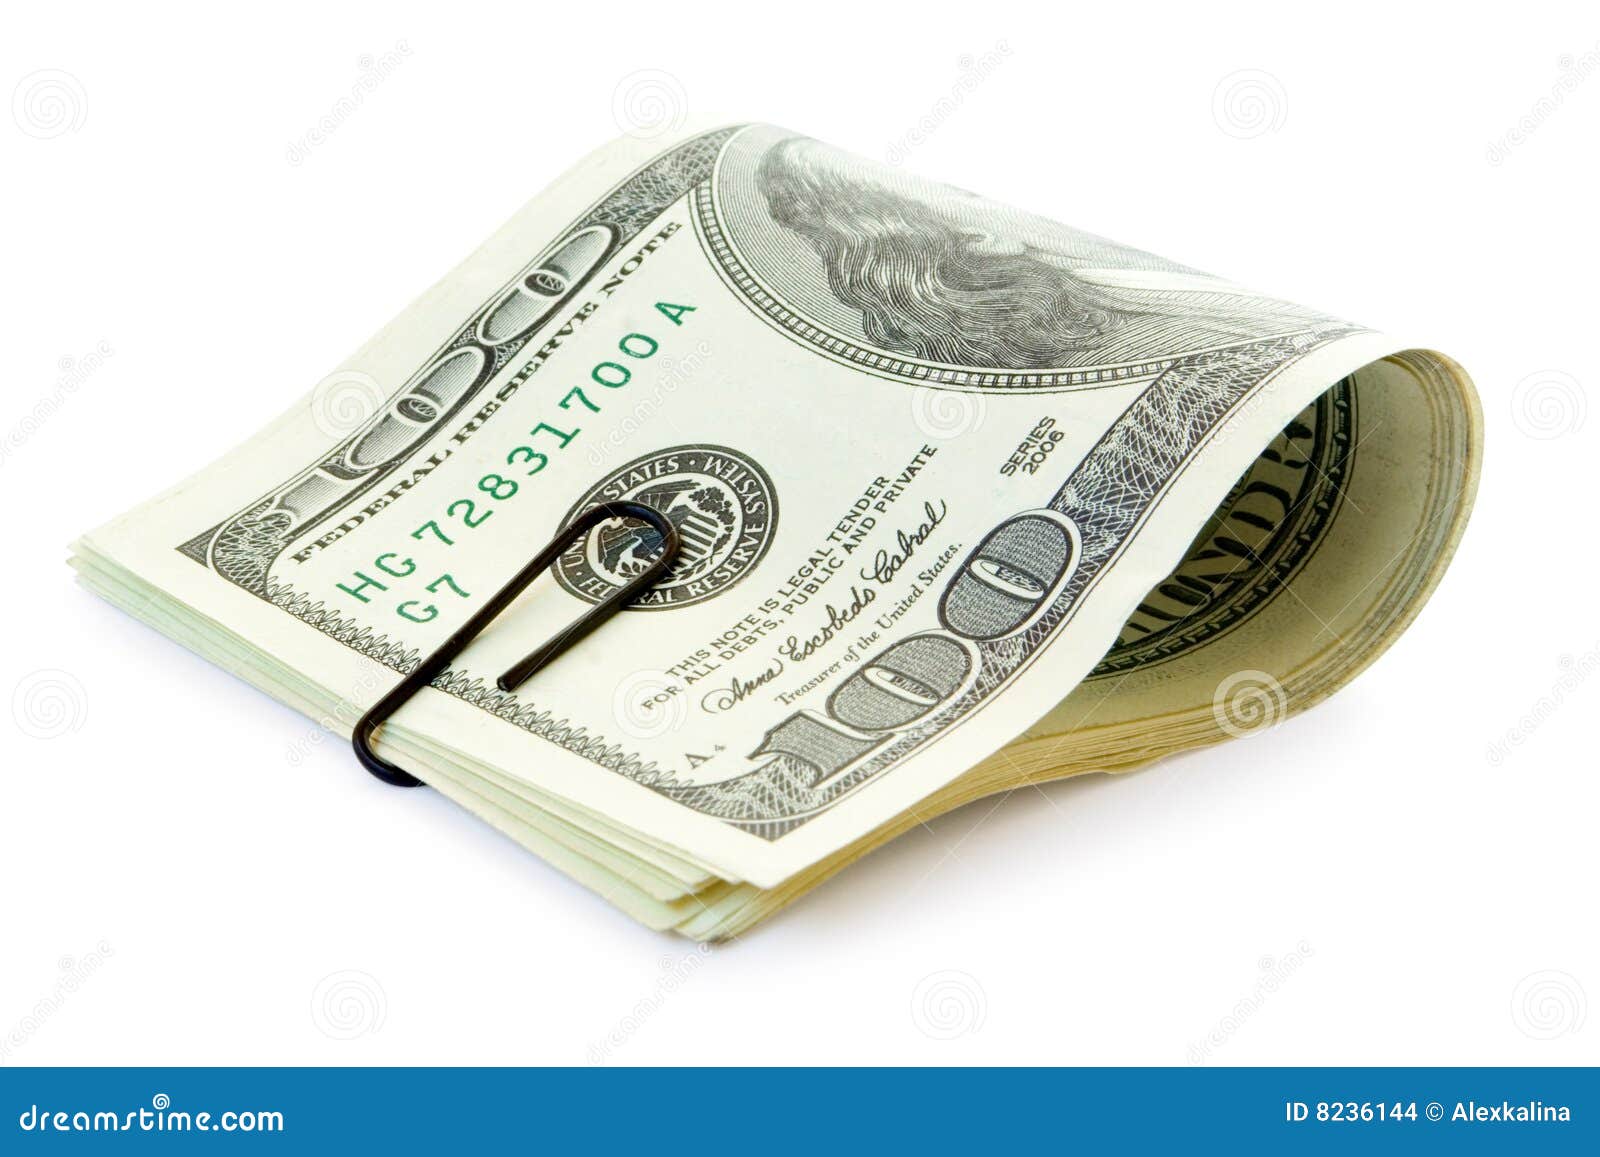 paper money clipart - photo #44